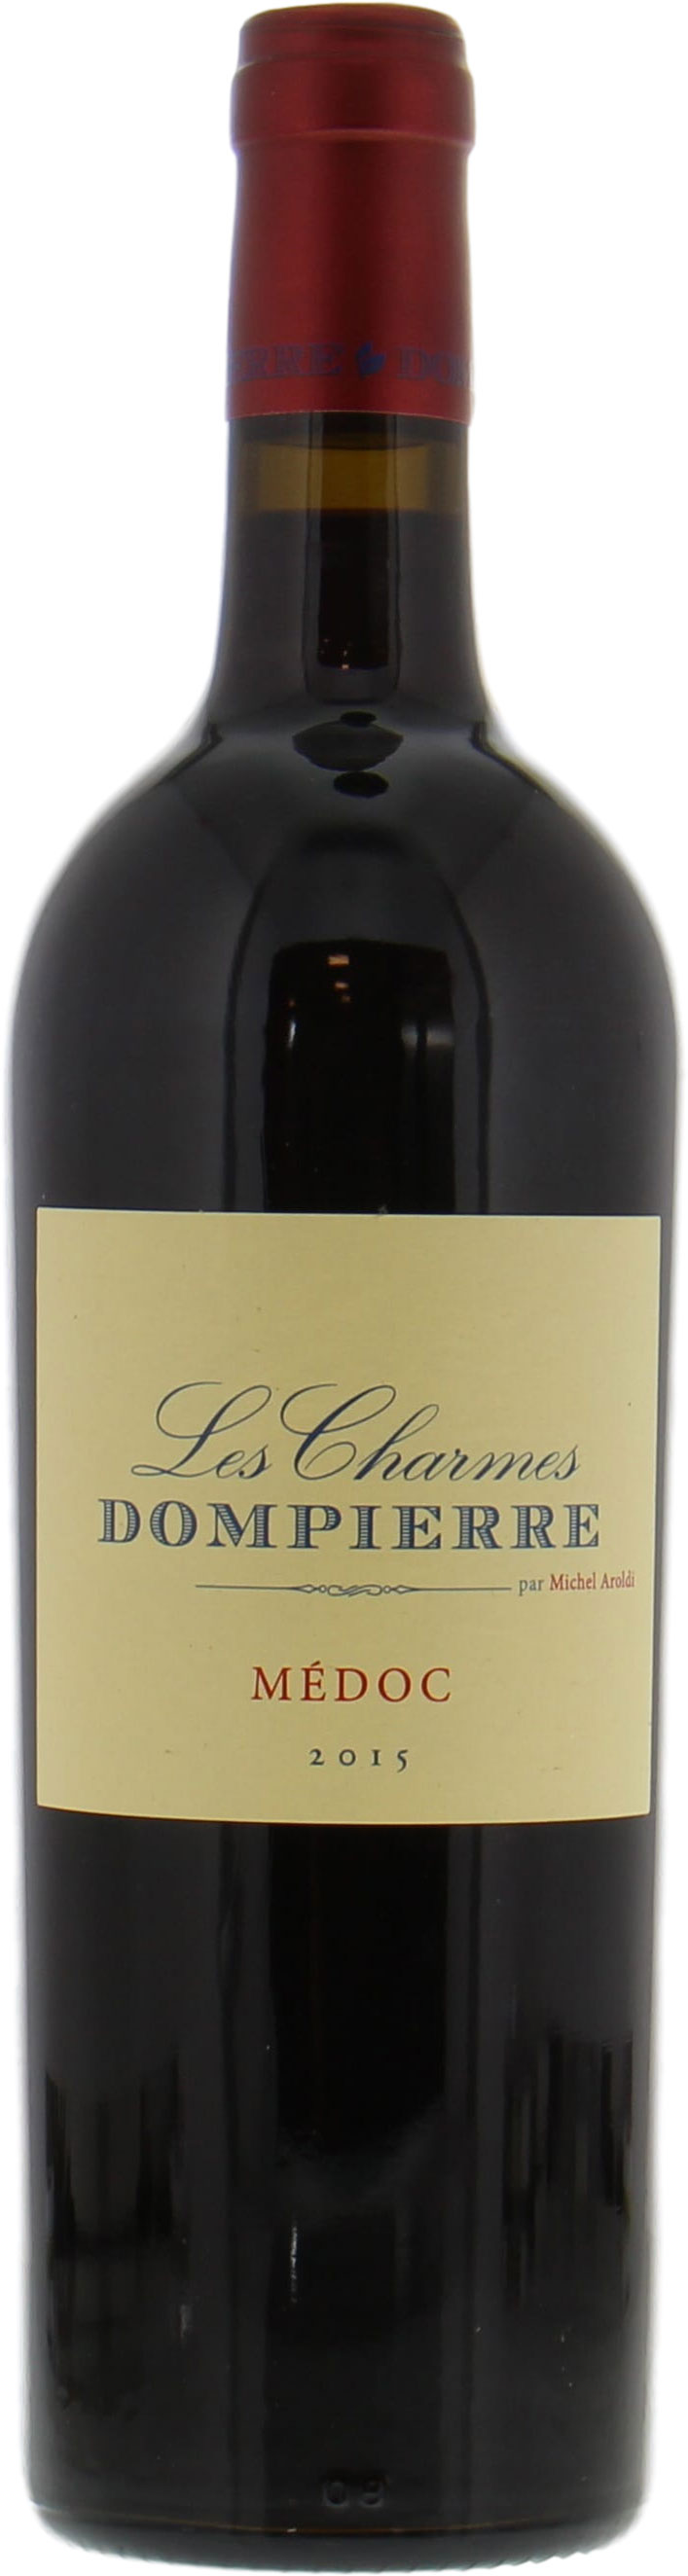 Chateau Dompierre - les Charmes 2015 Perfect